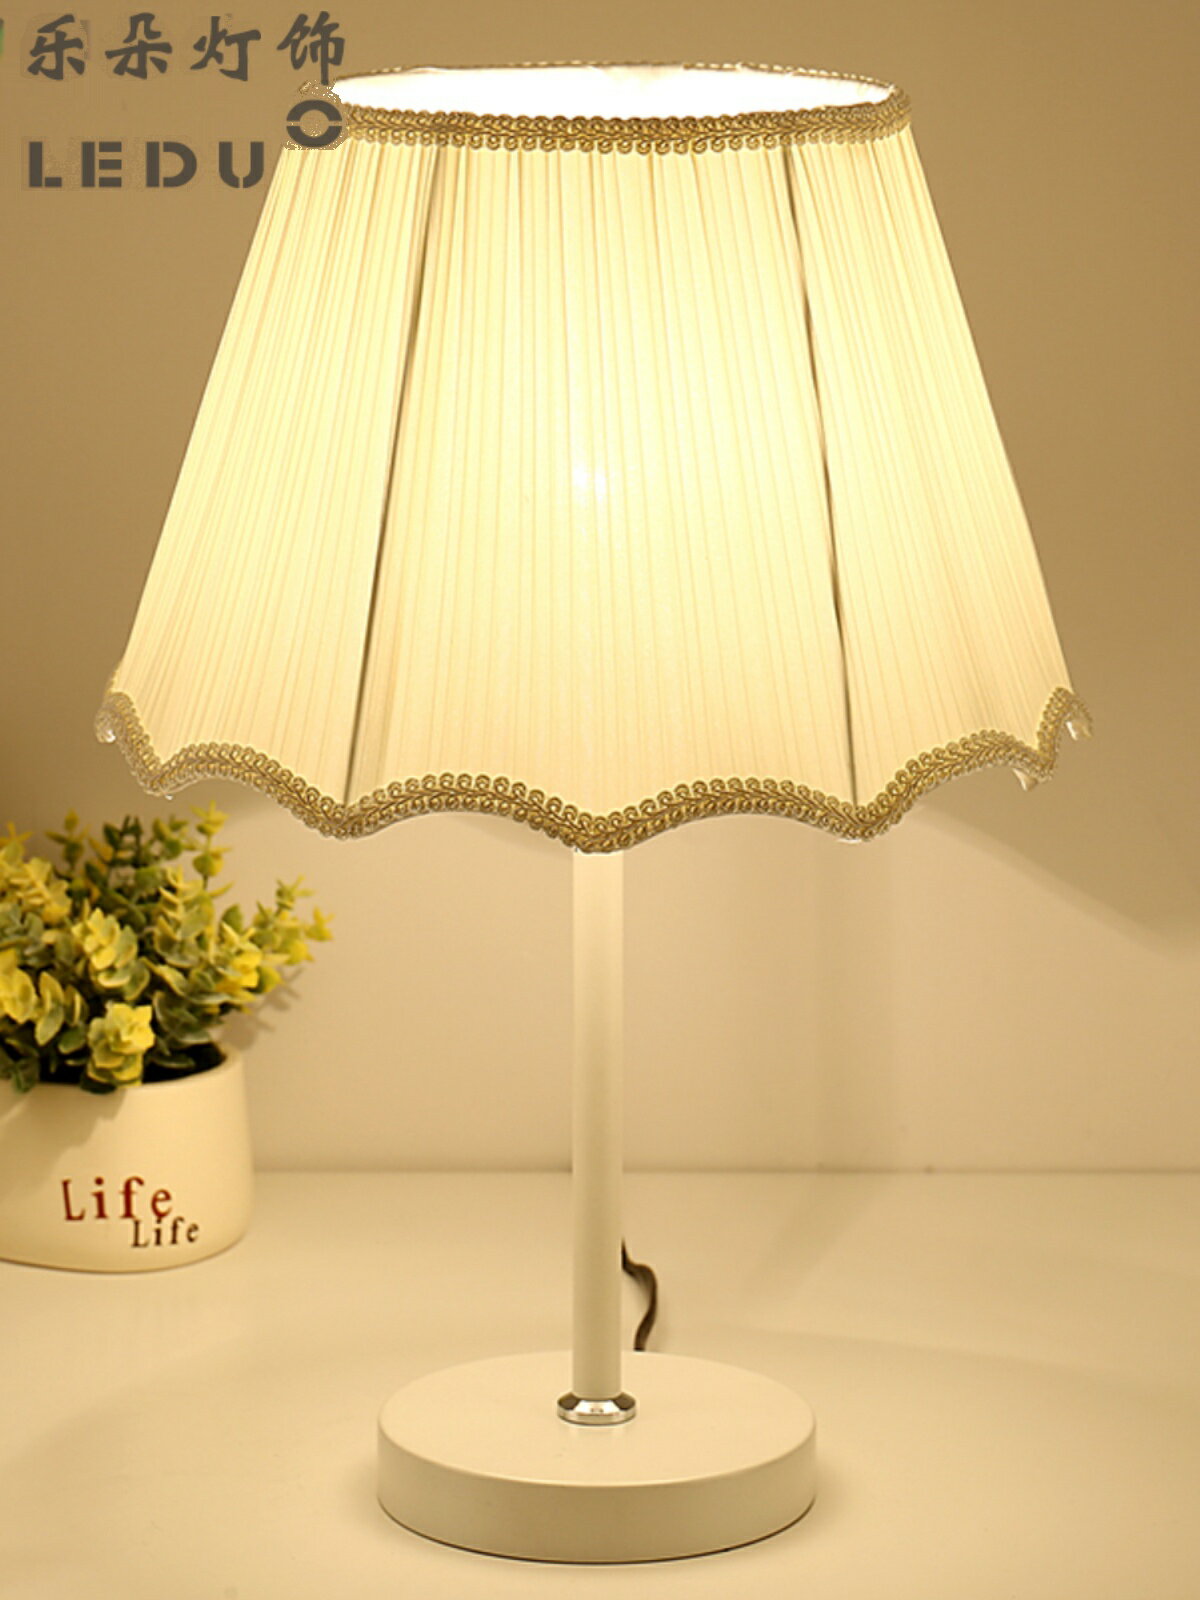 LED簡約現代創意北歐裝飾臺燈溫馨歐式臥室床頭燈可調光柜燈暖光